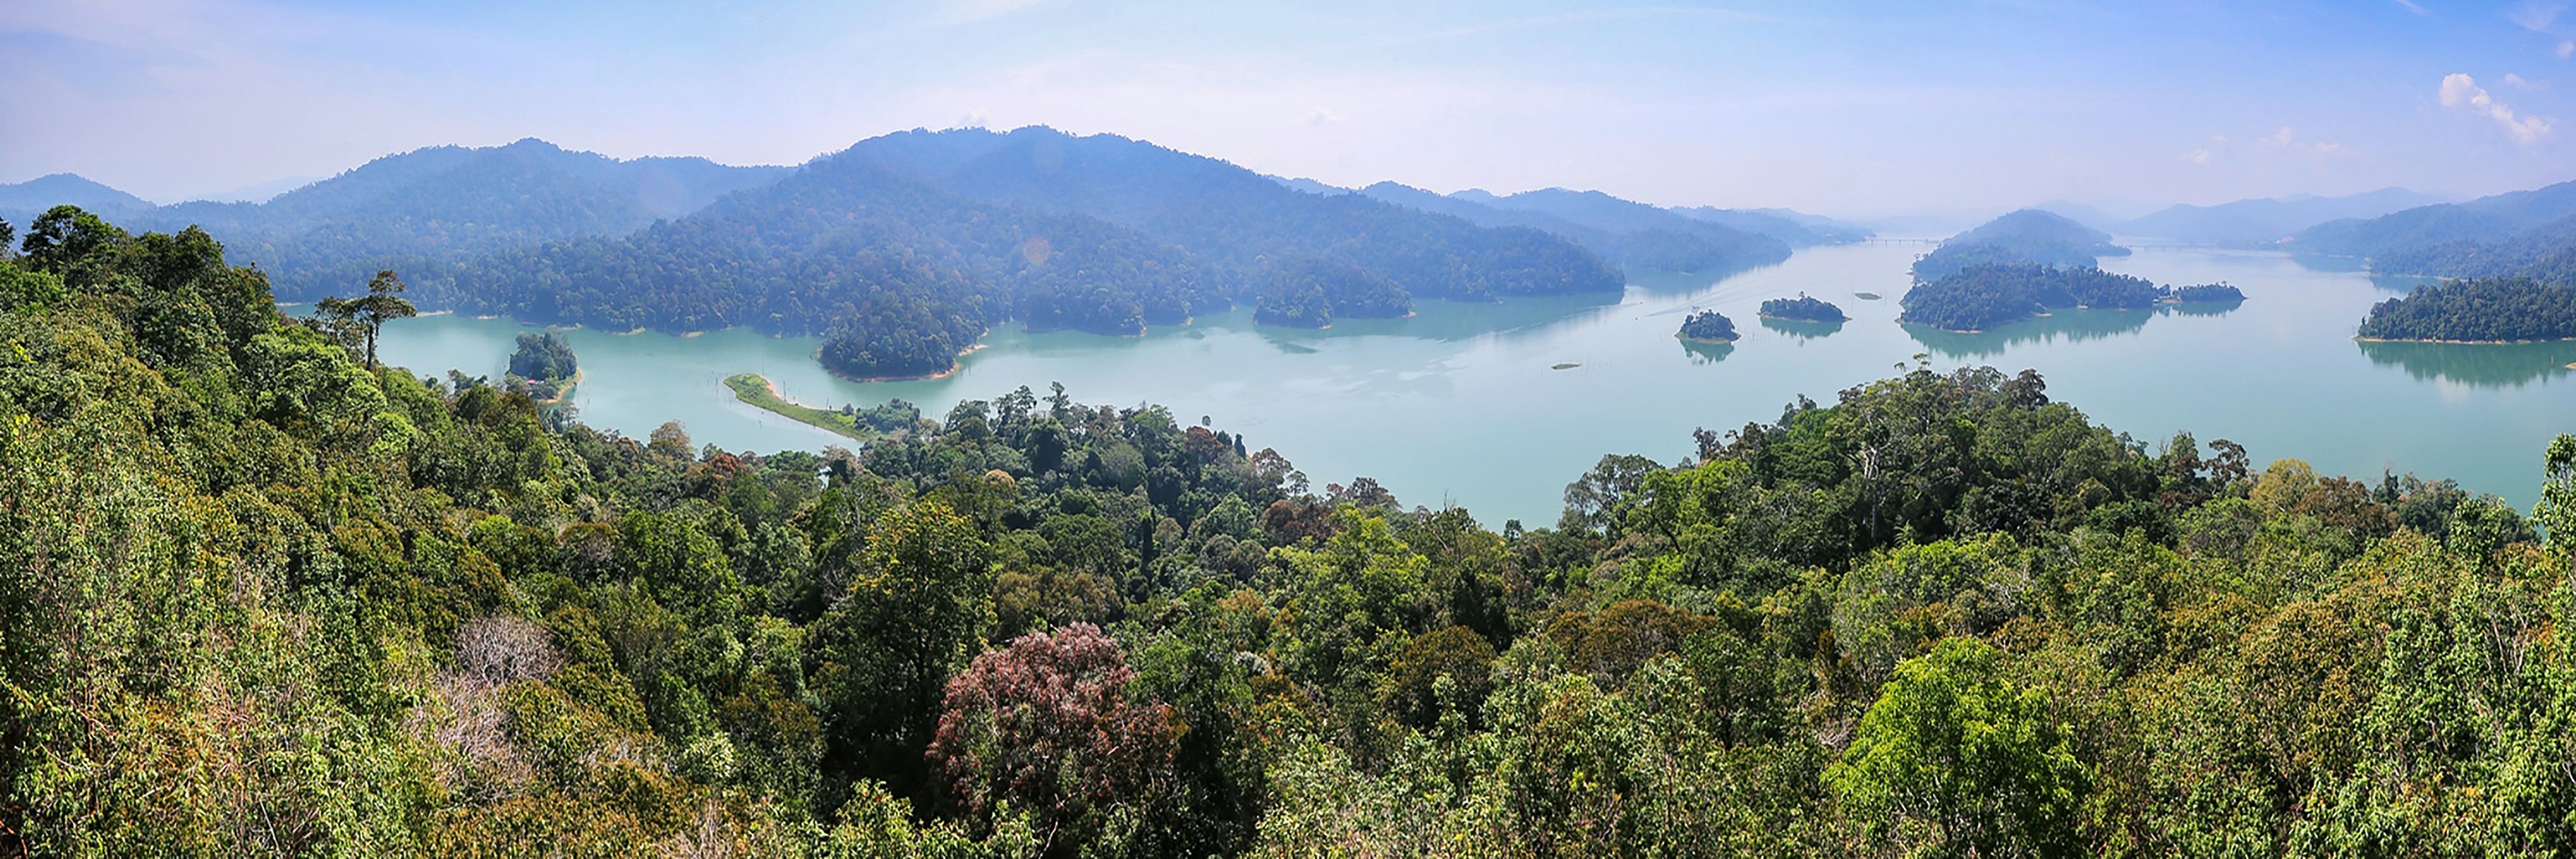 Erlebnis Westmalaysia und faszinierende Wildnis auf Borneo